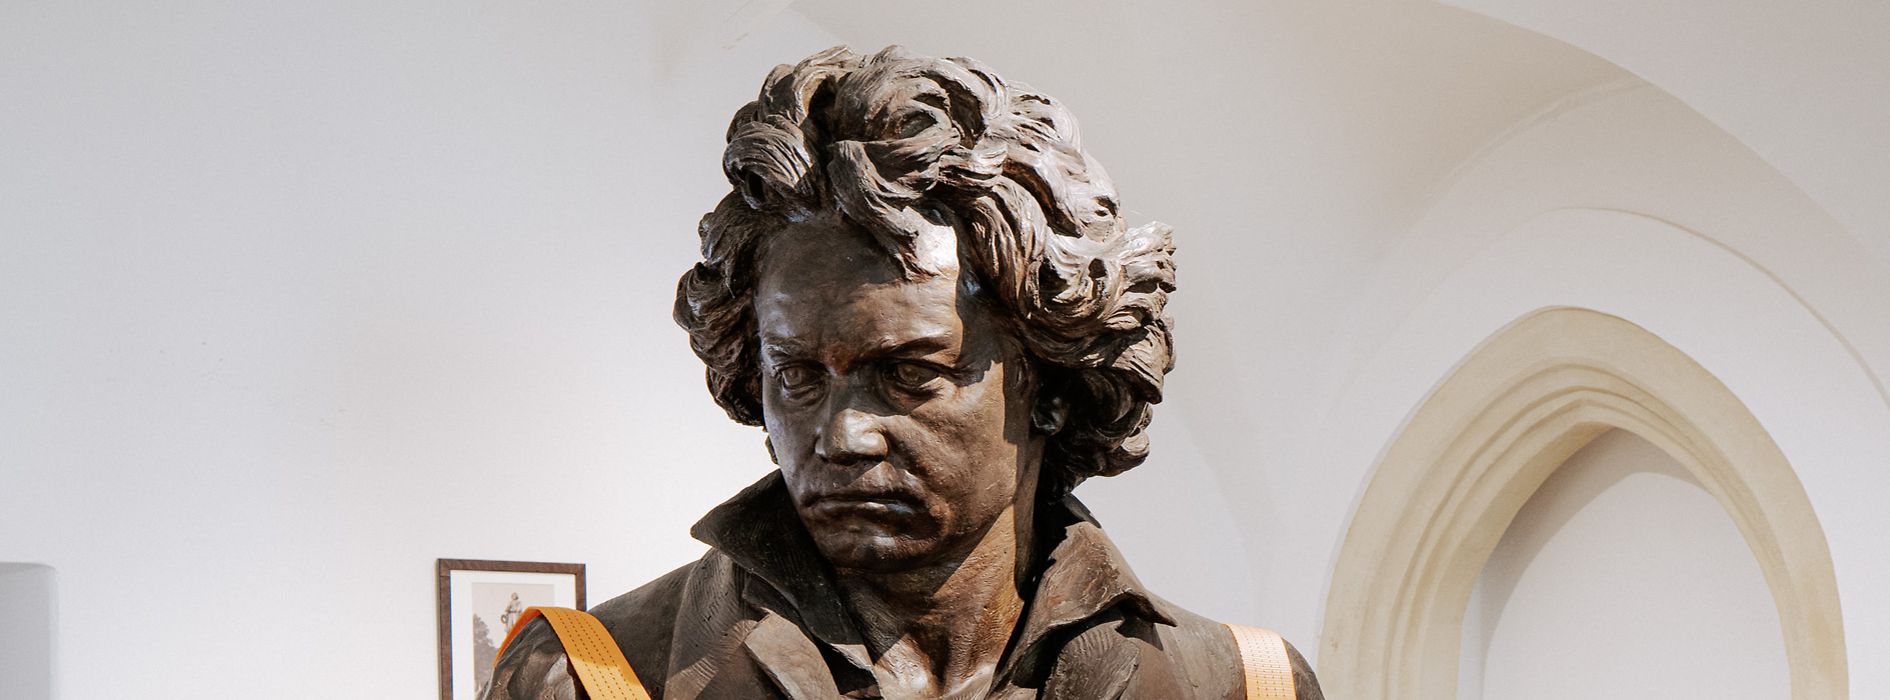 Beethoven Museum, Innenansicht, Beethovenbüste auf Paletten